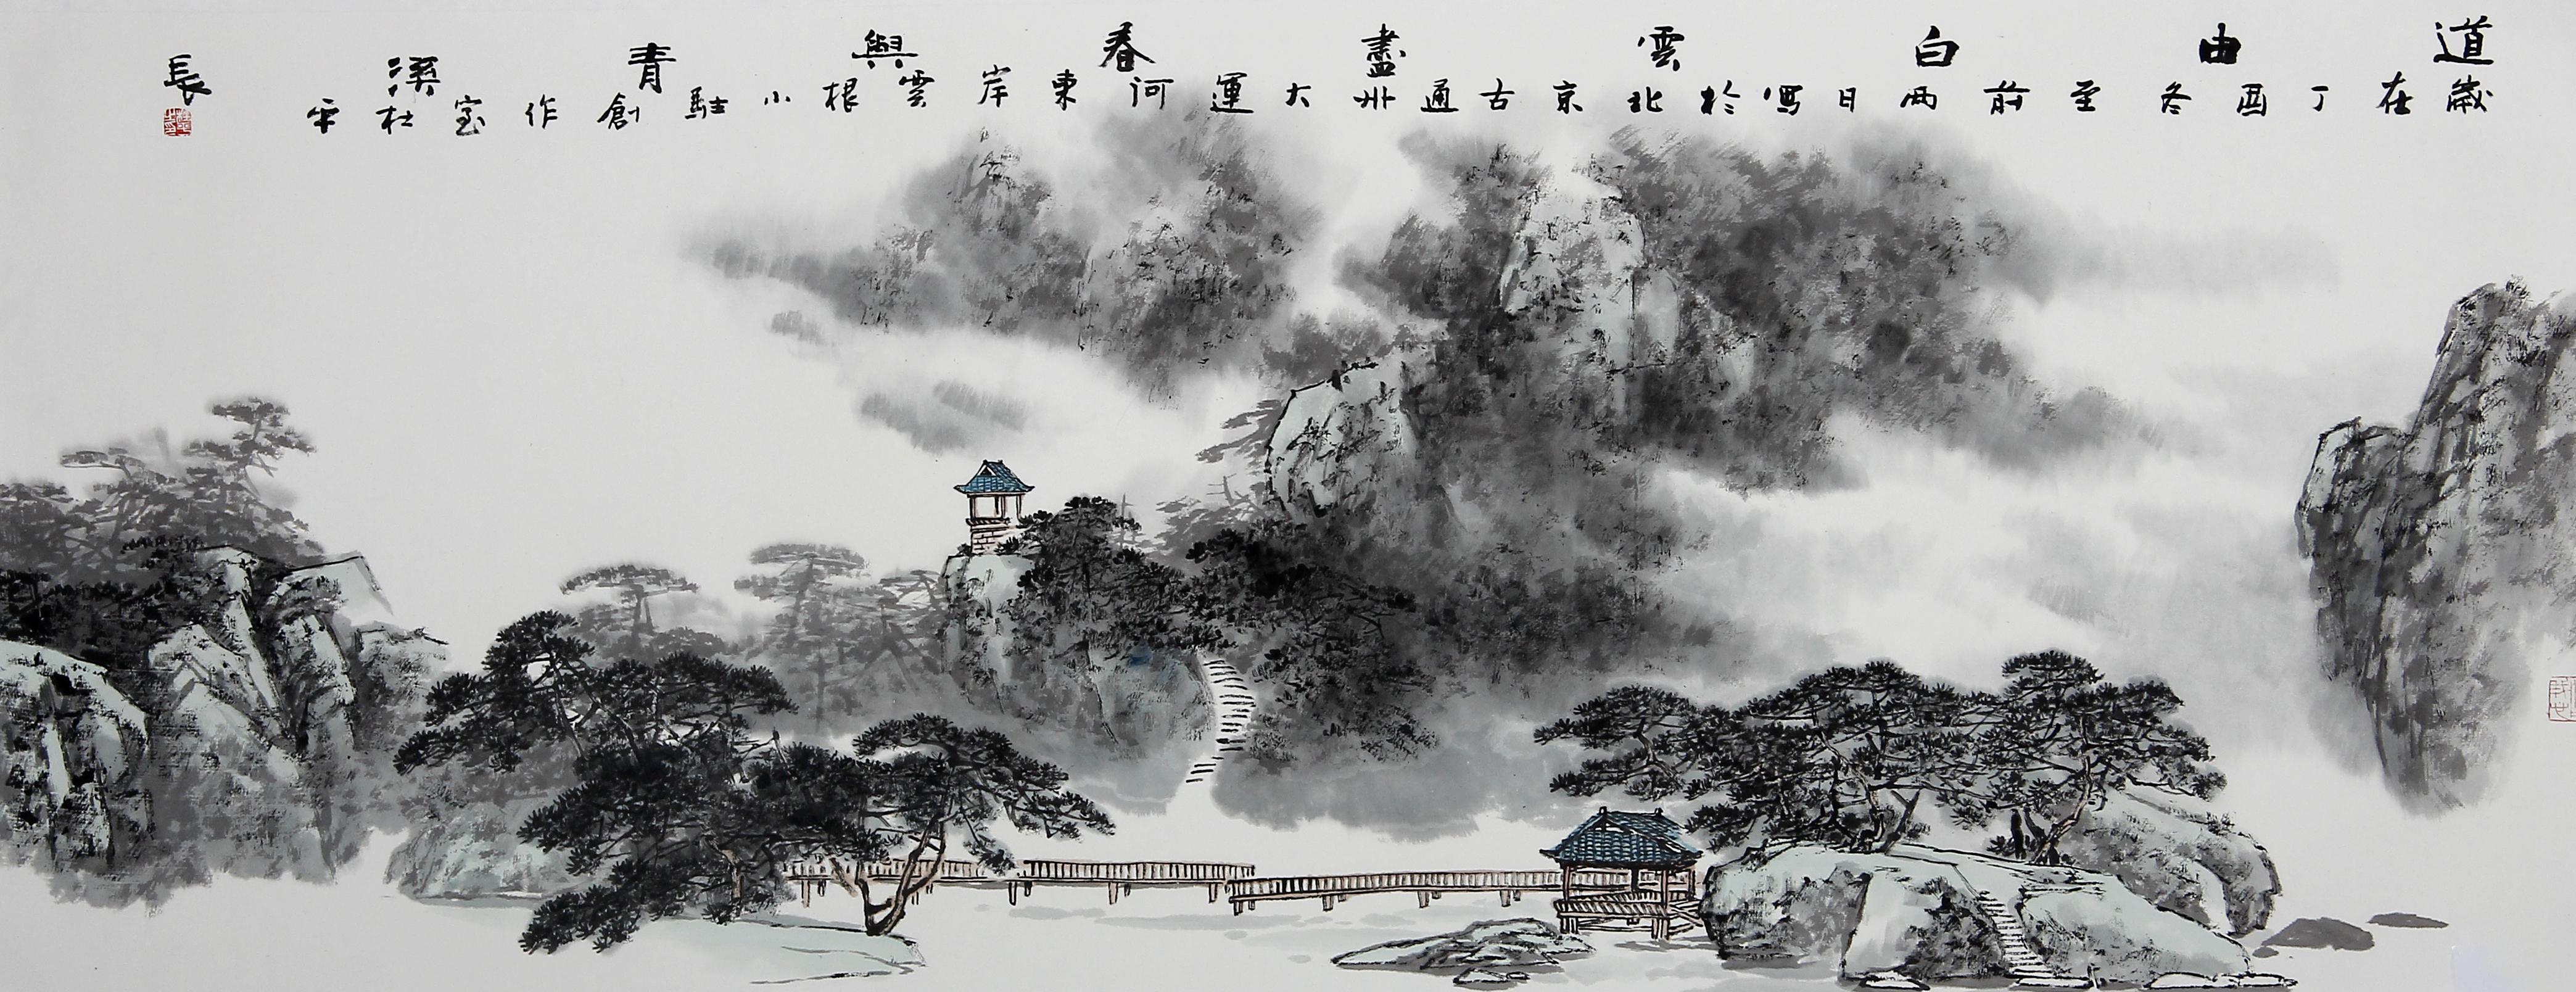 辽南画派创始人杜平山水画有很高的收藏价值和鉴赏价值